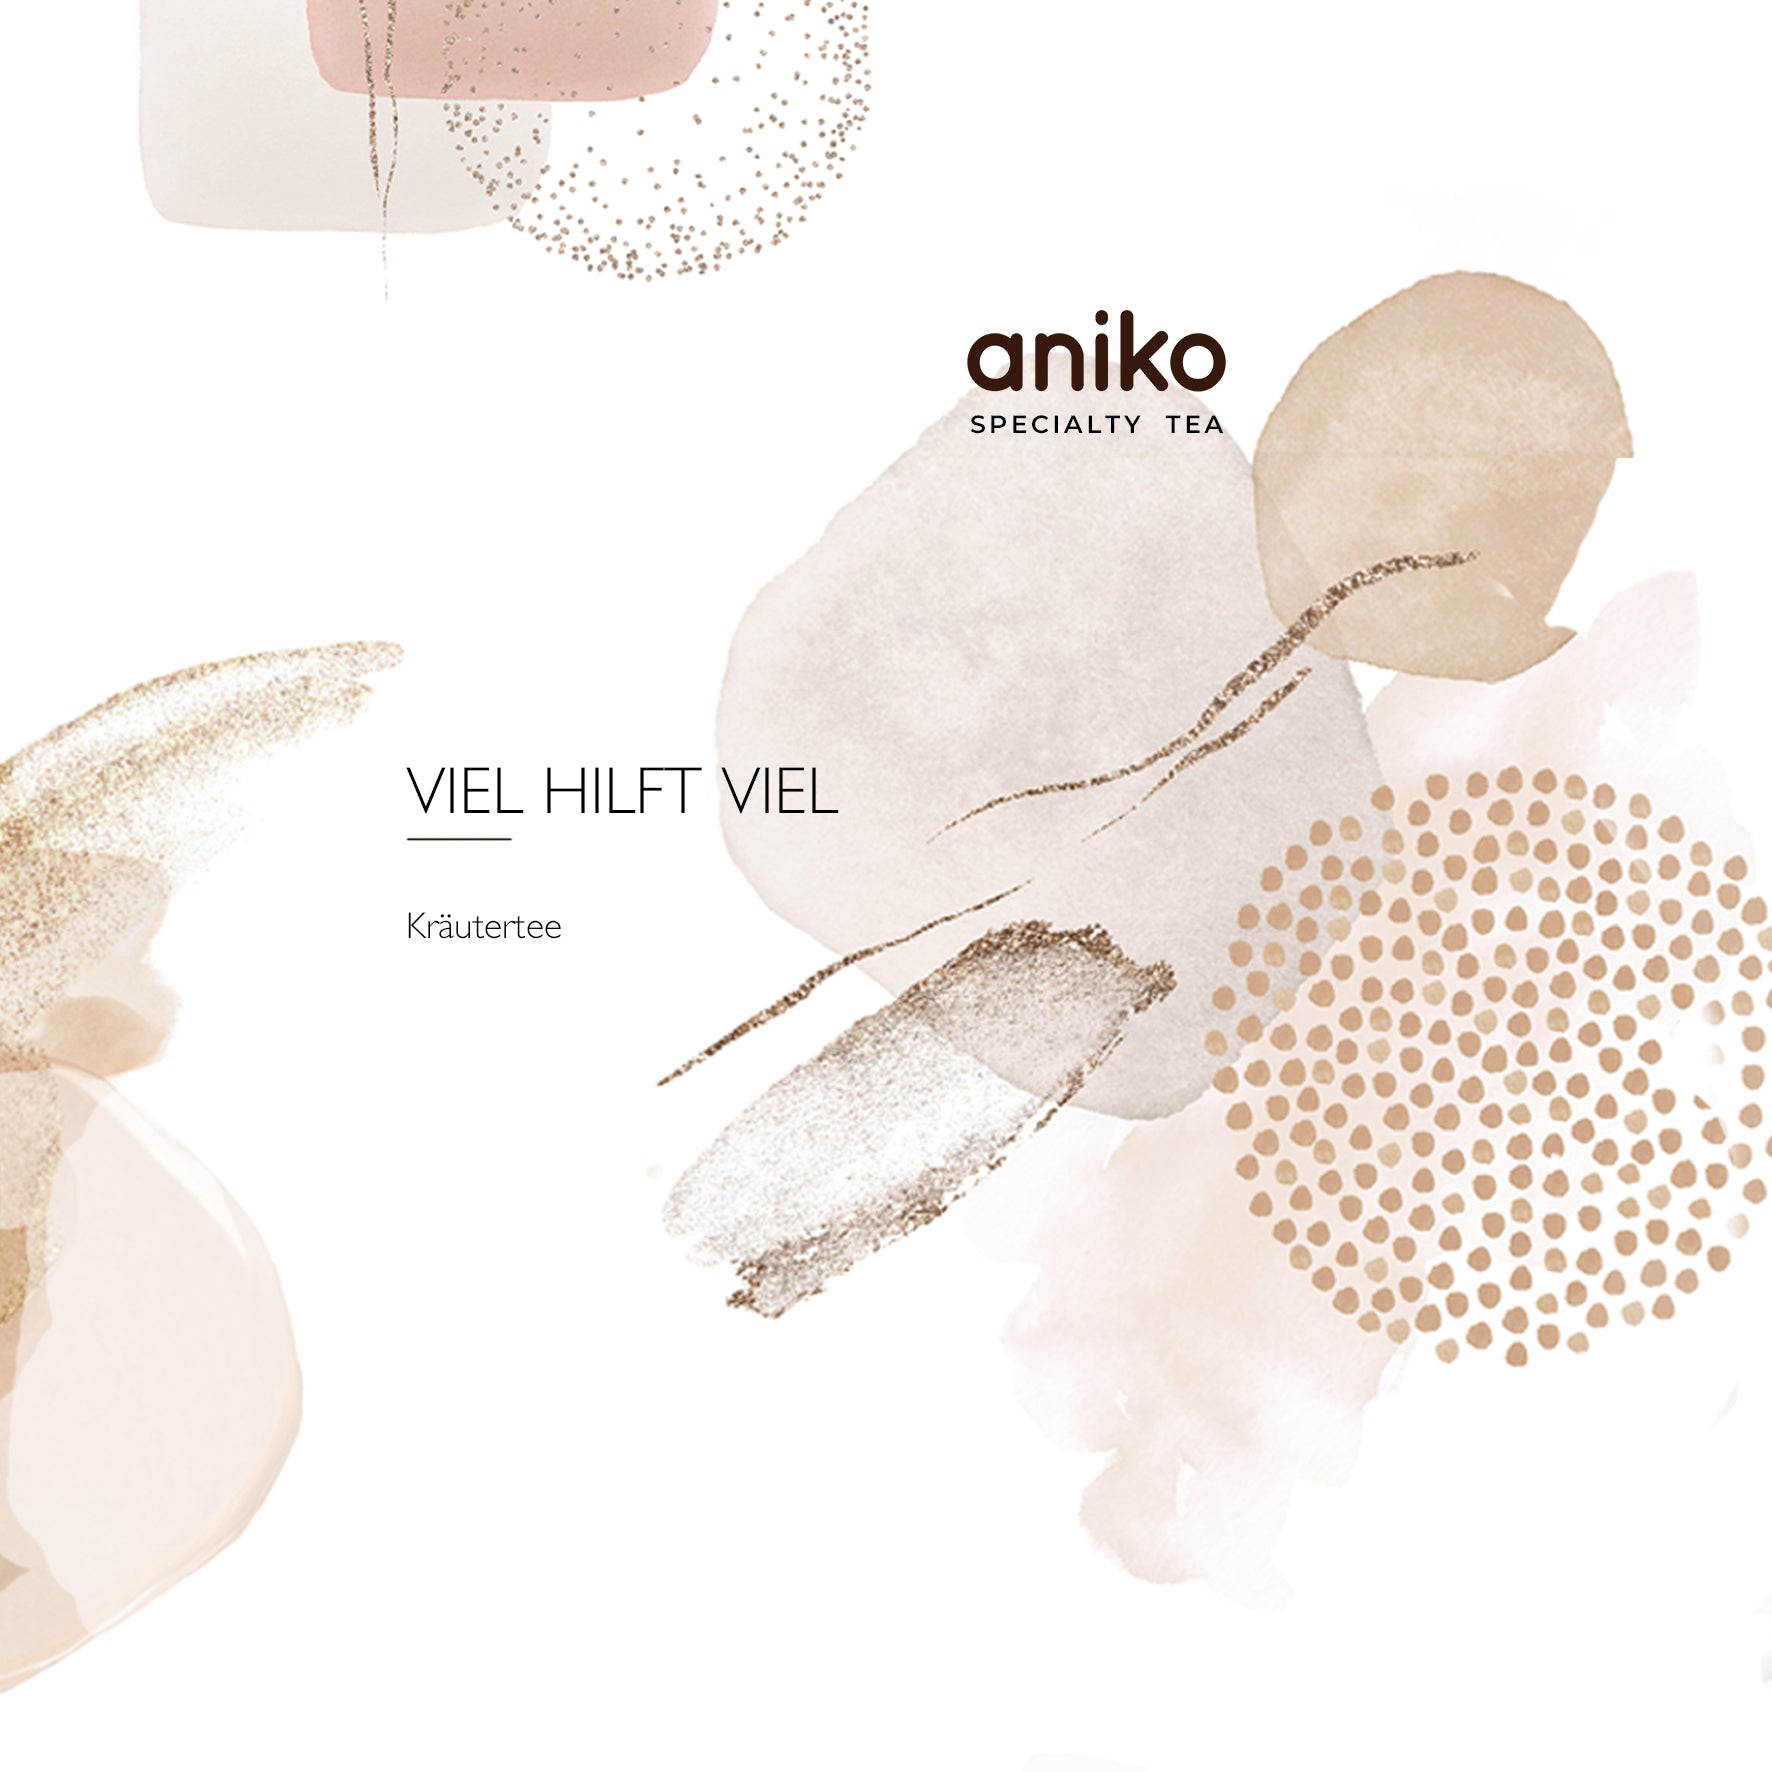 aniko Specialty Tea | Viel Hilft Viel